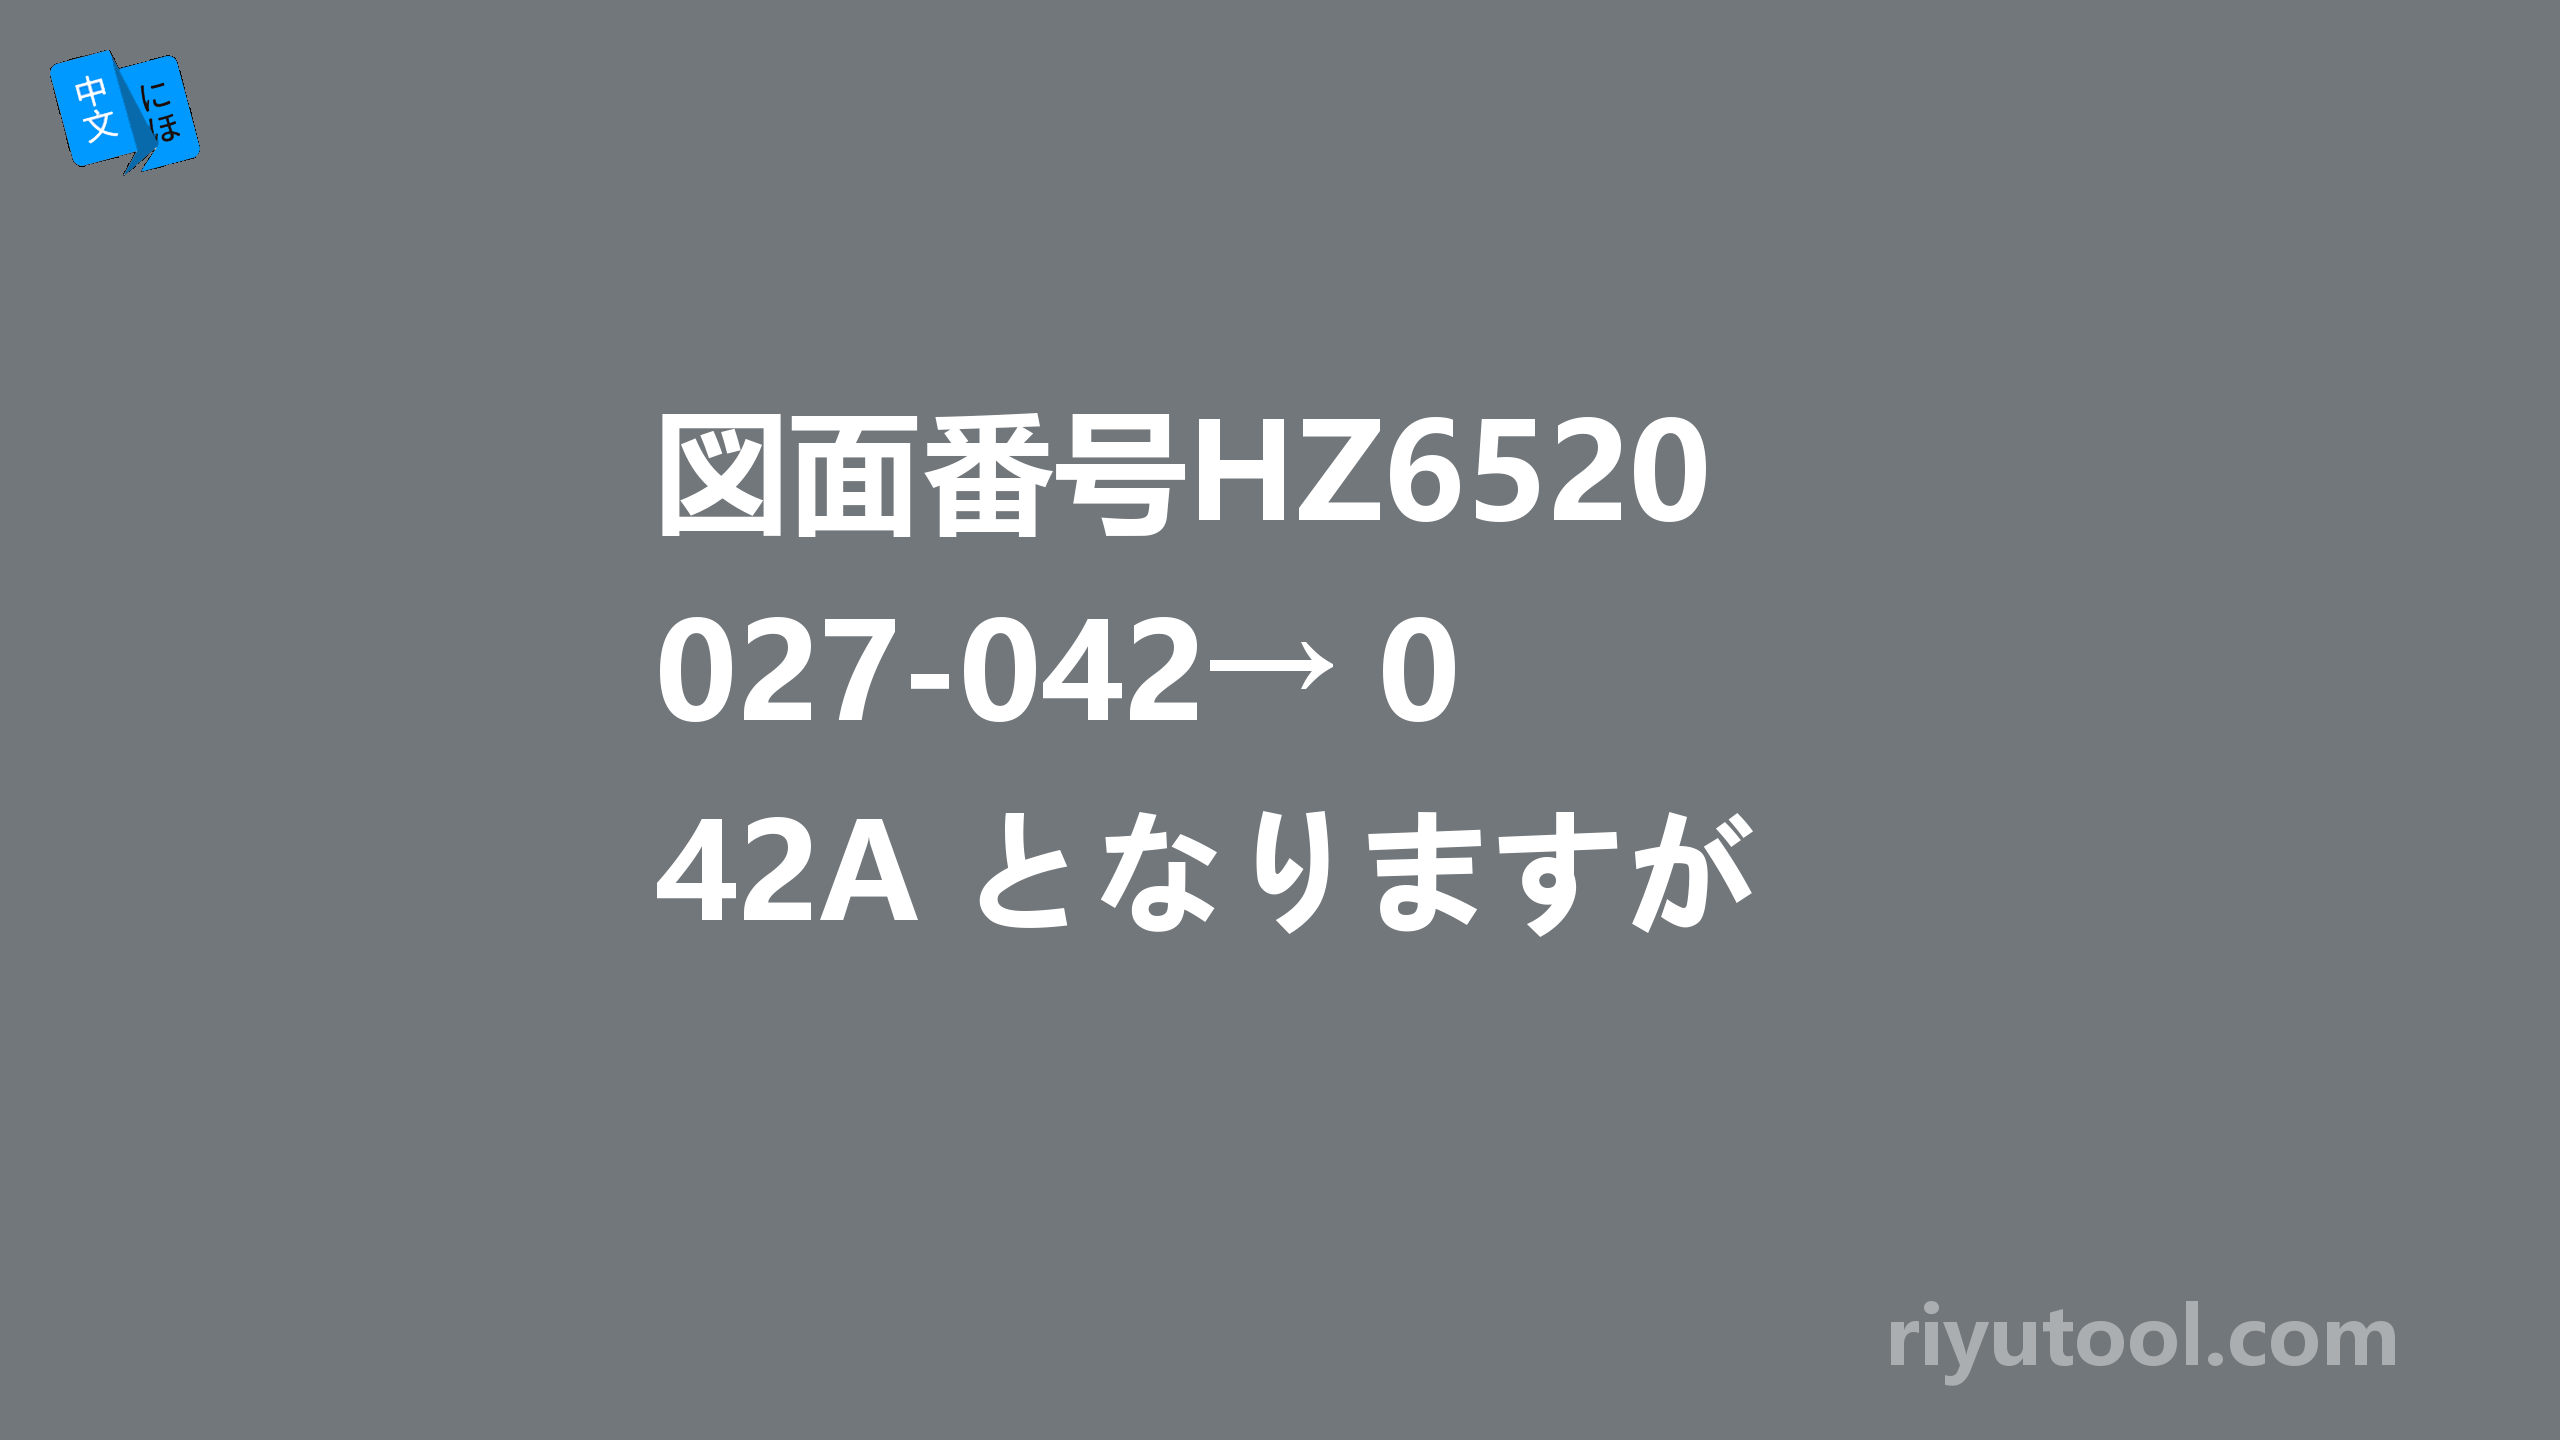 図面番号HZ652027-042→ 042A となりますが、9tの板厚の 中心に 2-M6深12